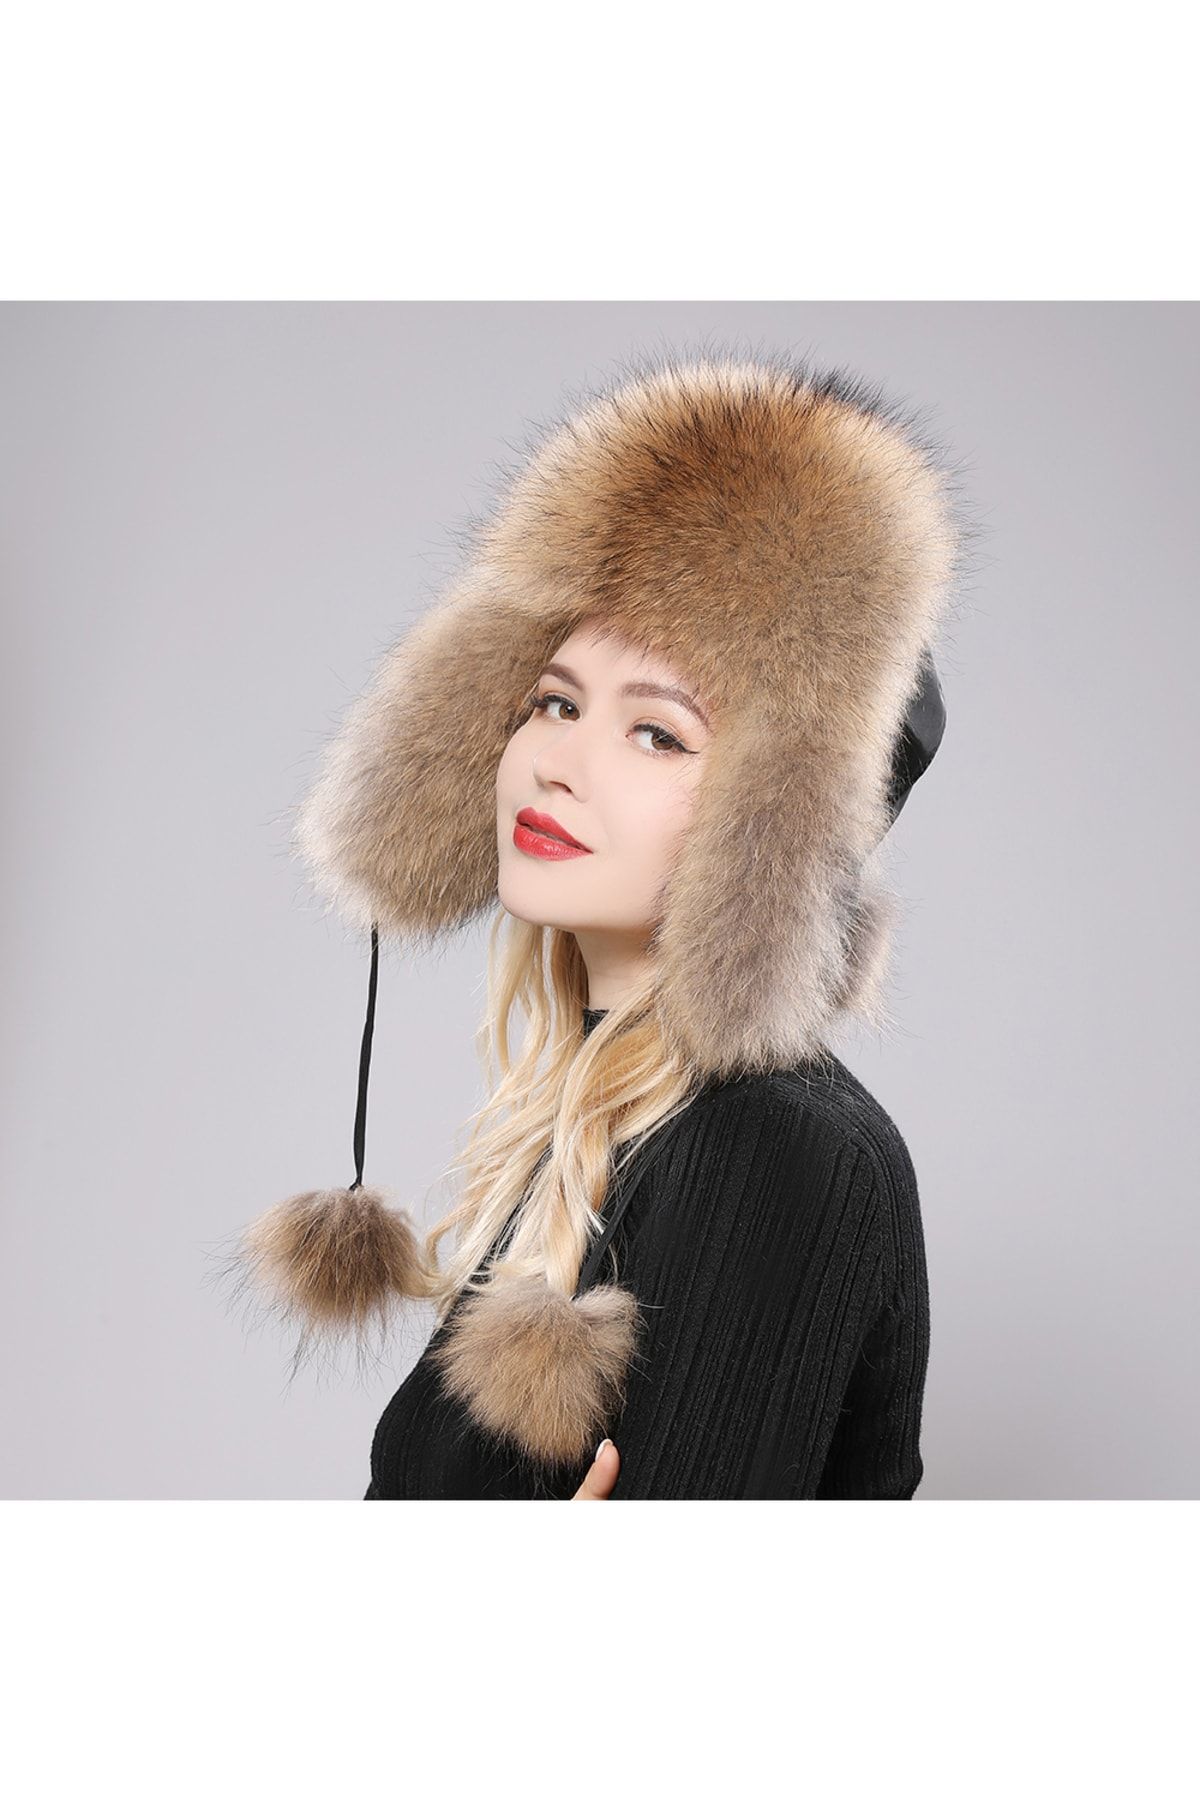 SYNOPE Kürklü Şapka Kadın Rus Kalpağı Kar Kış Kayak Şapkası Pofidik Tüylü Şapka